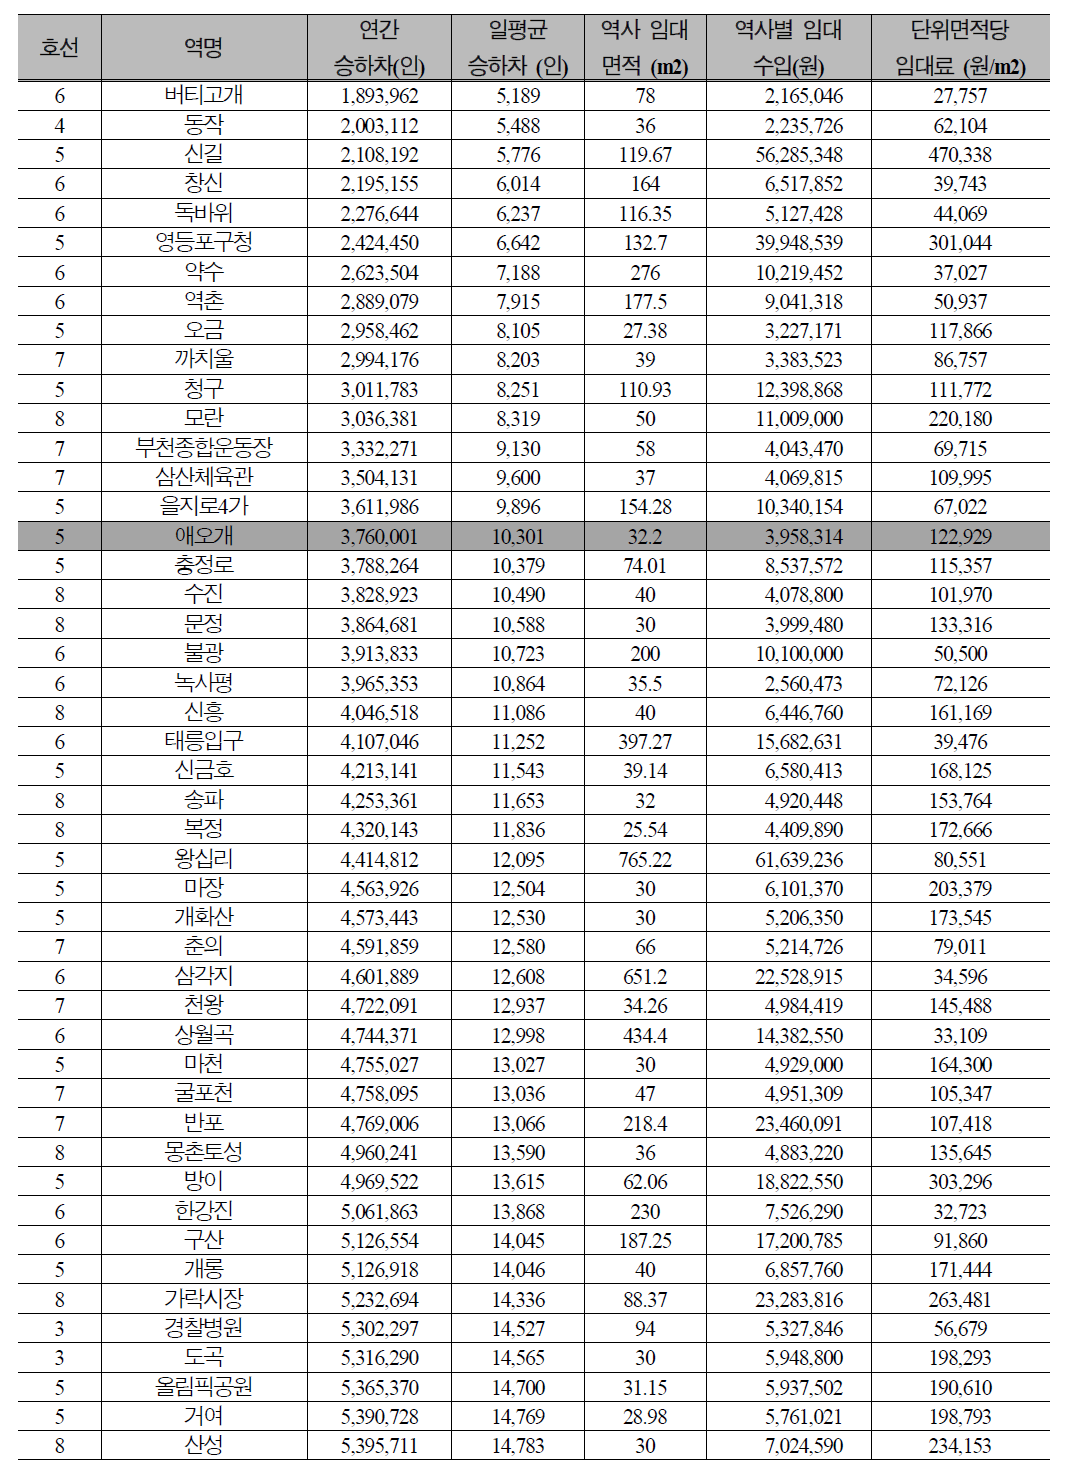 서울 도시철도 역사의 승하차인원 규모별 단위 면적당 평균 임대료 (전체)